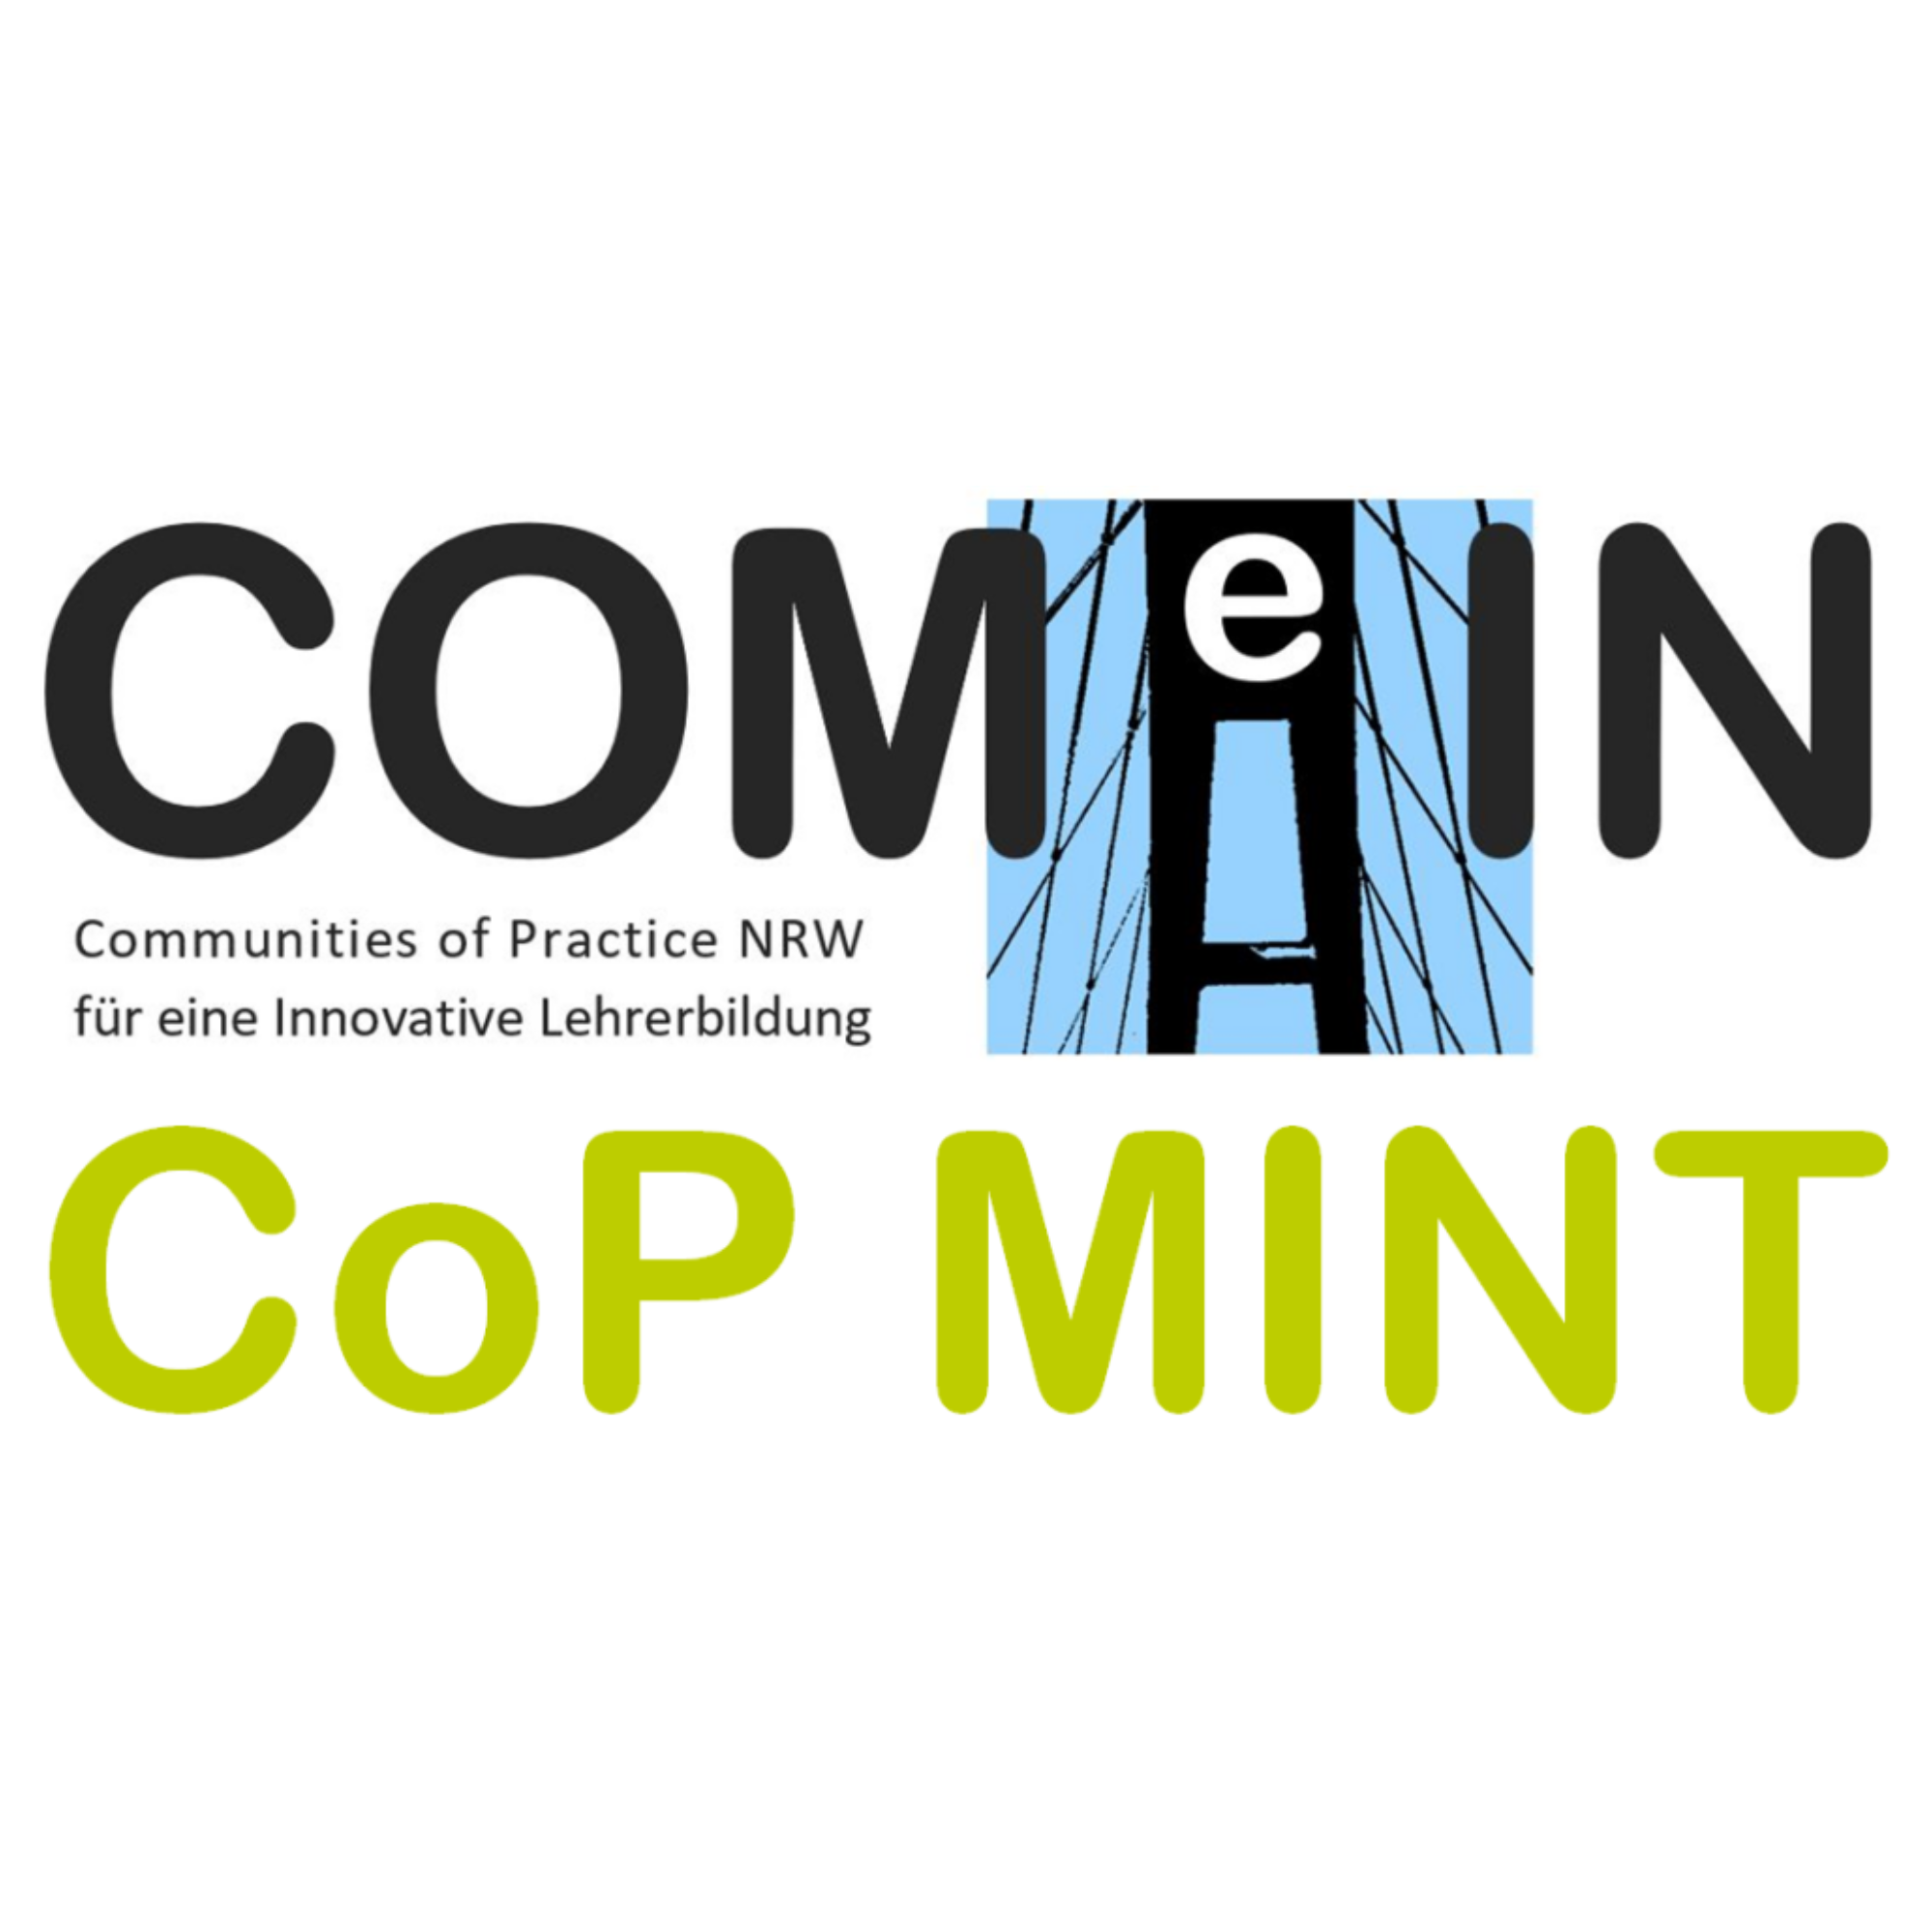 Das Bild zeigt den Schriftzug "ComeIn. Communities of Practice NRW für eine innovative Lehrerbildung. CoP MINT"